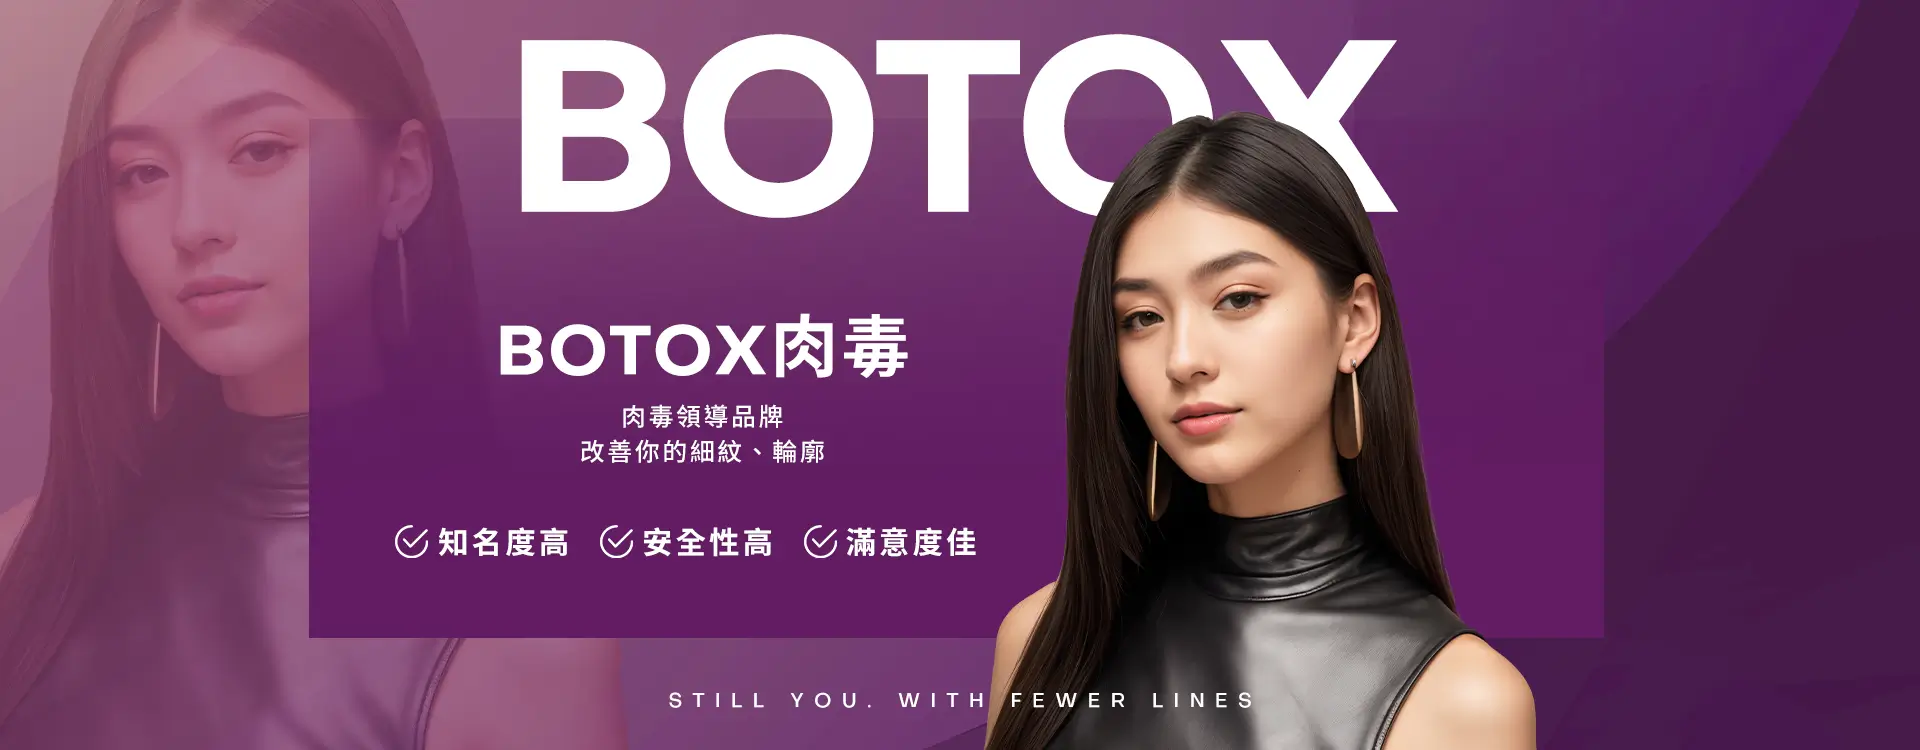 Botox肉毒-肉毒領導品牌改善你的細紋、輪廓